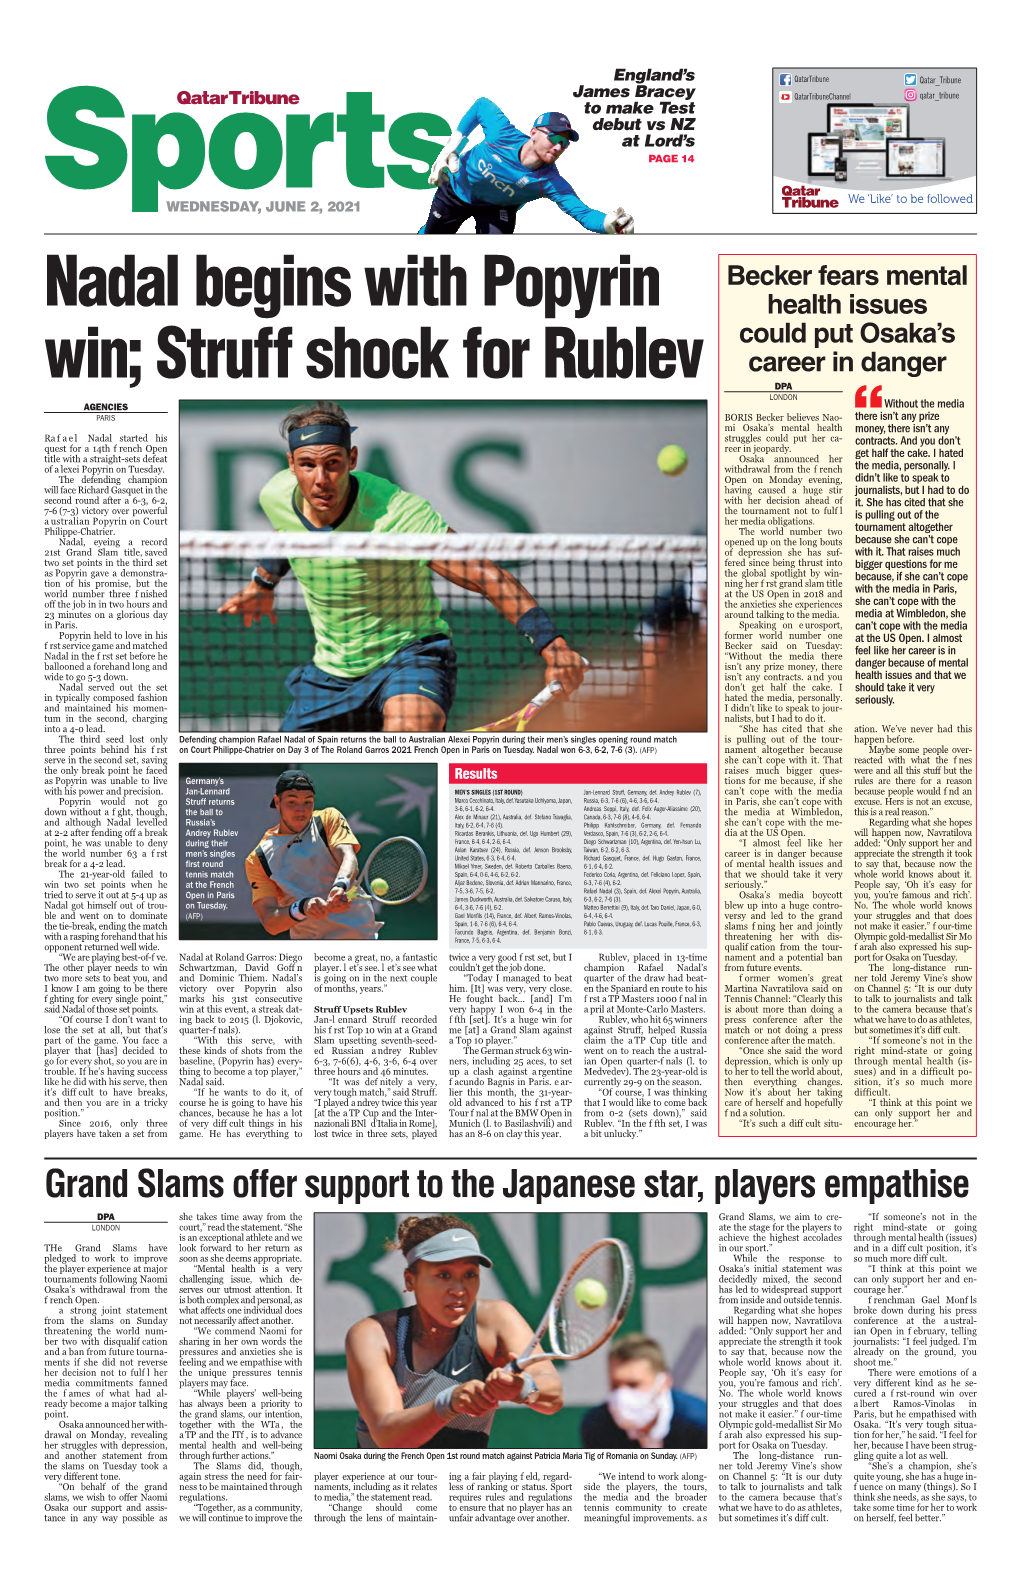 Nadal Begins with Popyrin Win; Struff Shock for Rublev